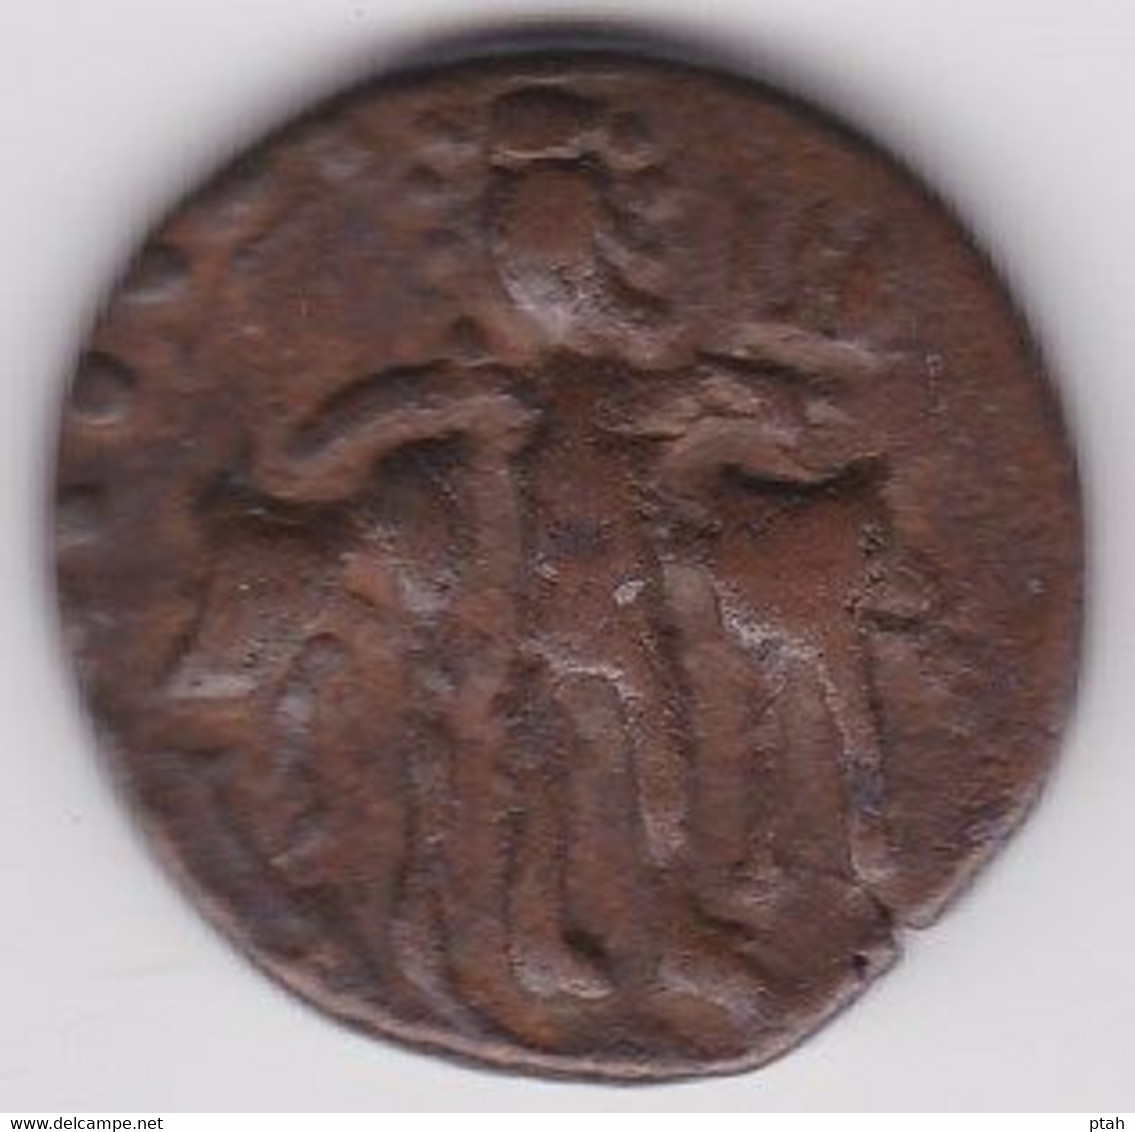 KIDARITE, AE Unit - Indische Münzen